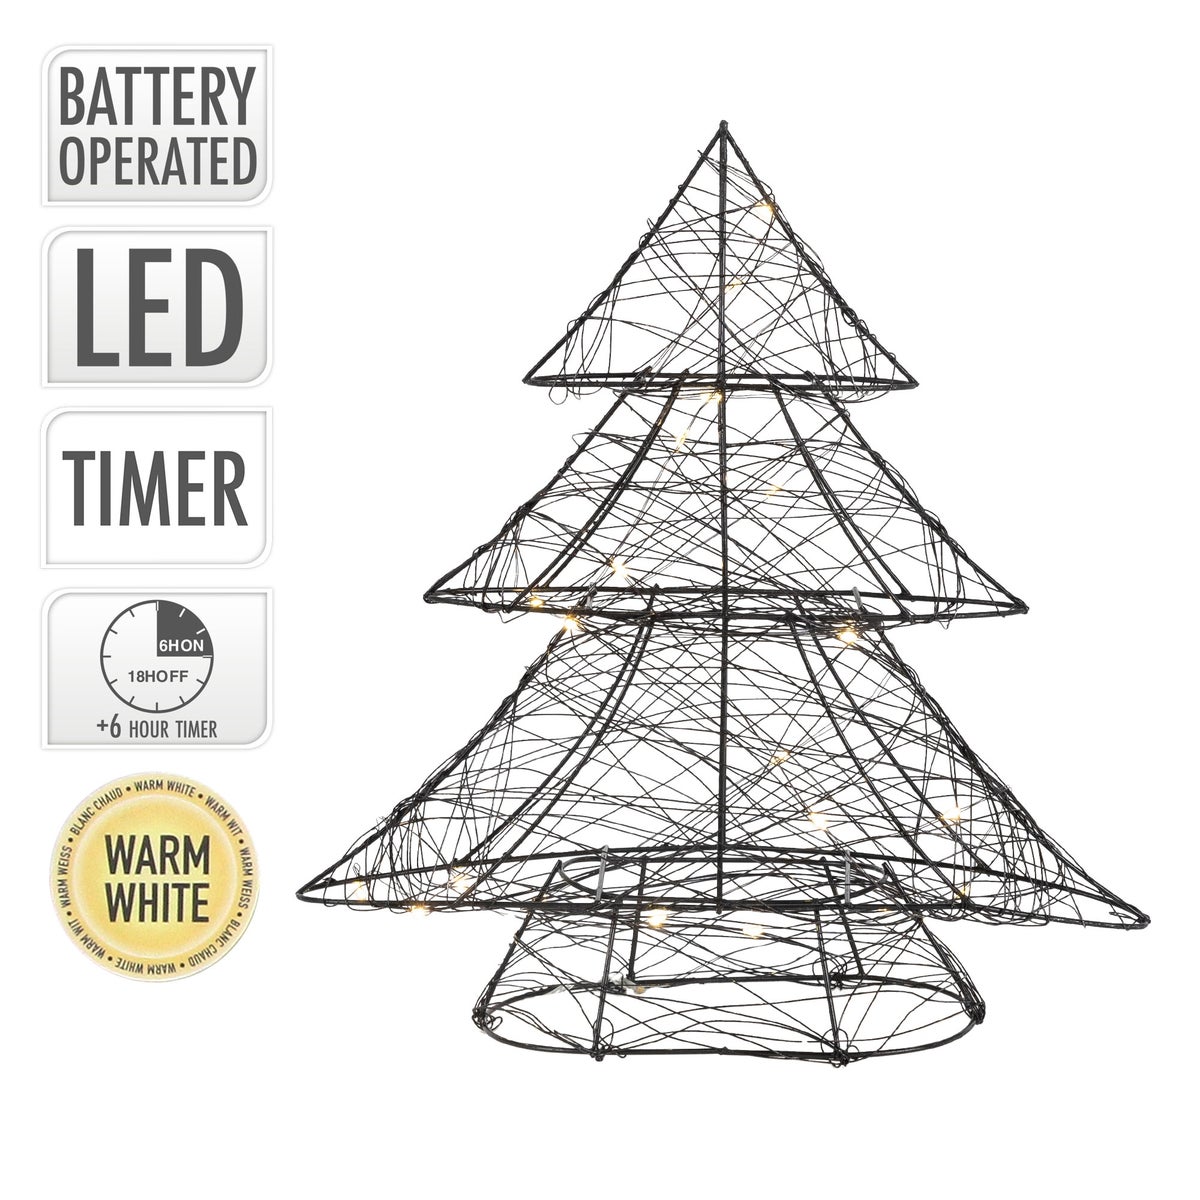 ECD Germany LED Deko Baum Weihnachten mit 20 warmweißen LEDs, 30 cm hoch, Metall, Schwarz, Weihnachtsbaum mit Beleuchtung &amp; Timer, Innen, batteriebetrieben, Lichterbaum Tanne stehend Weihnachtsdeko